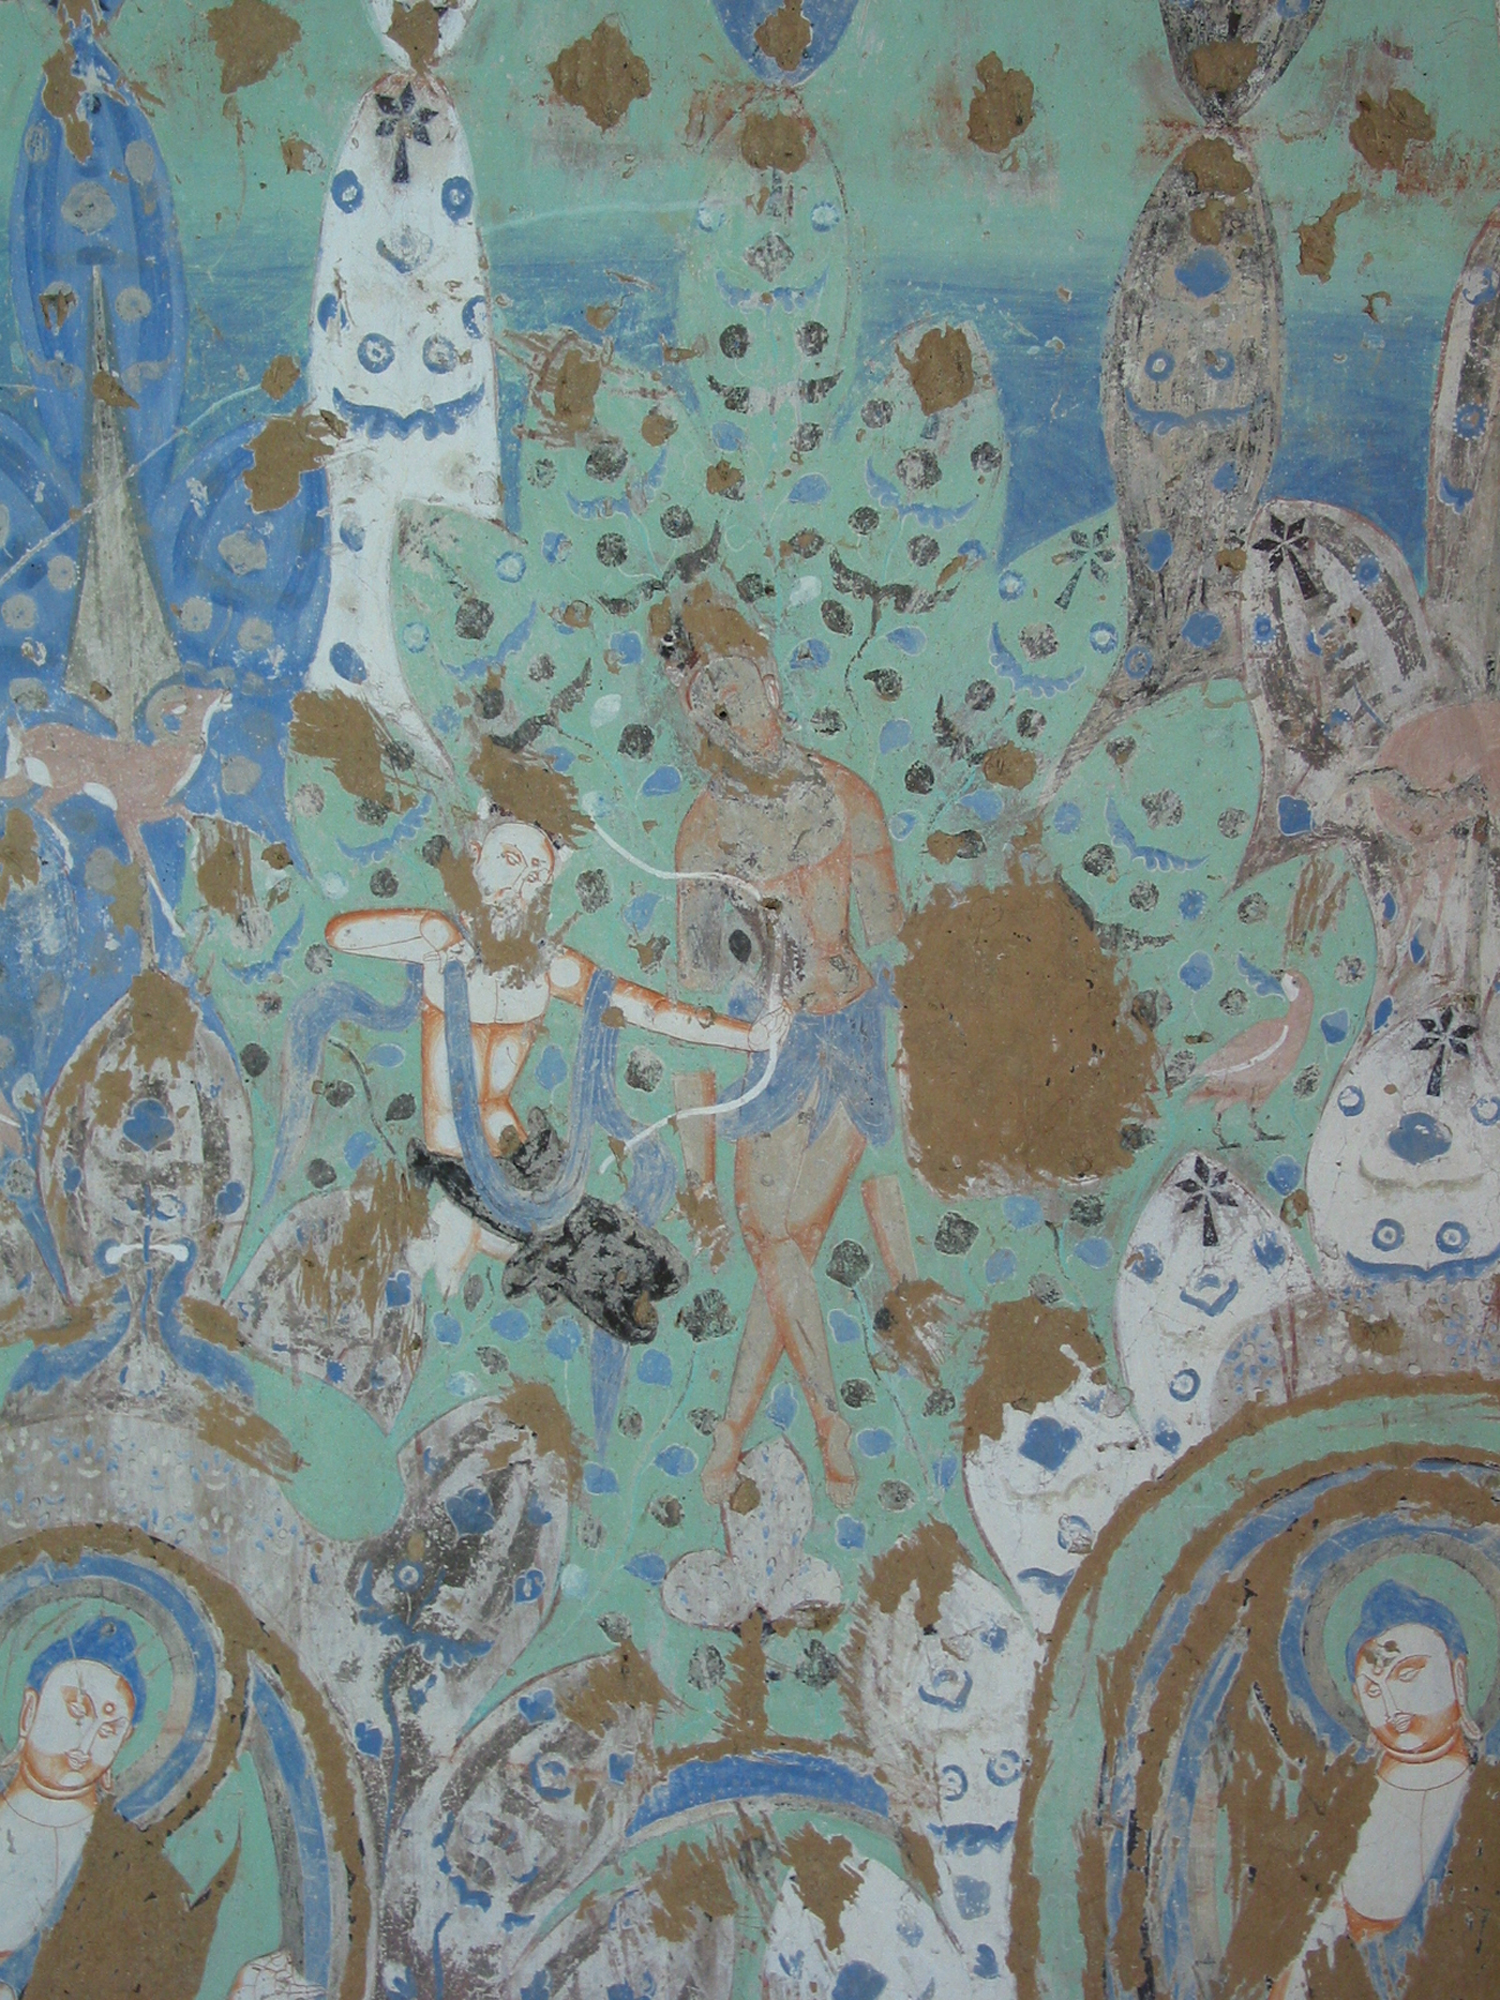 丝路明珠——龟兹石窟壁画艺术线上虚拟展” - 马耳他中国文化中心